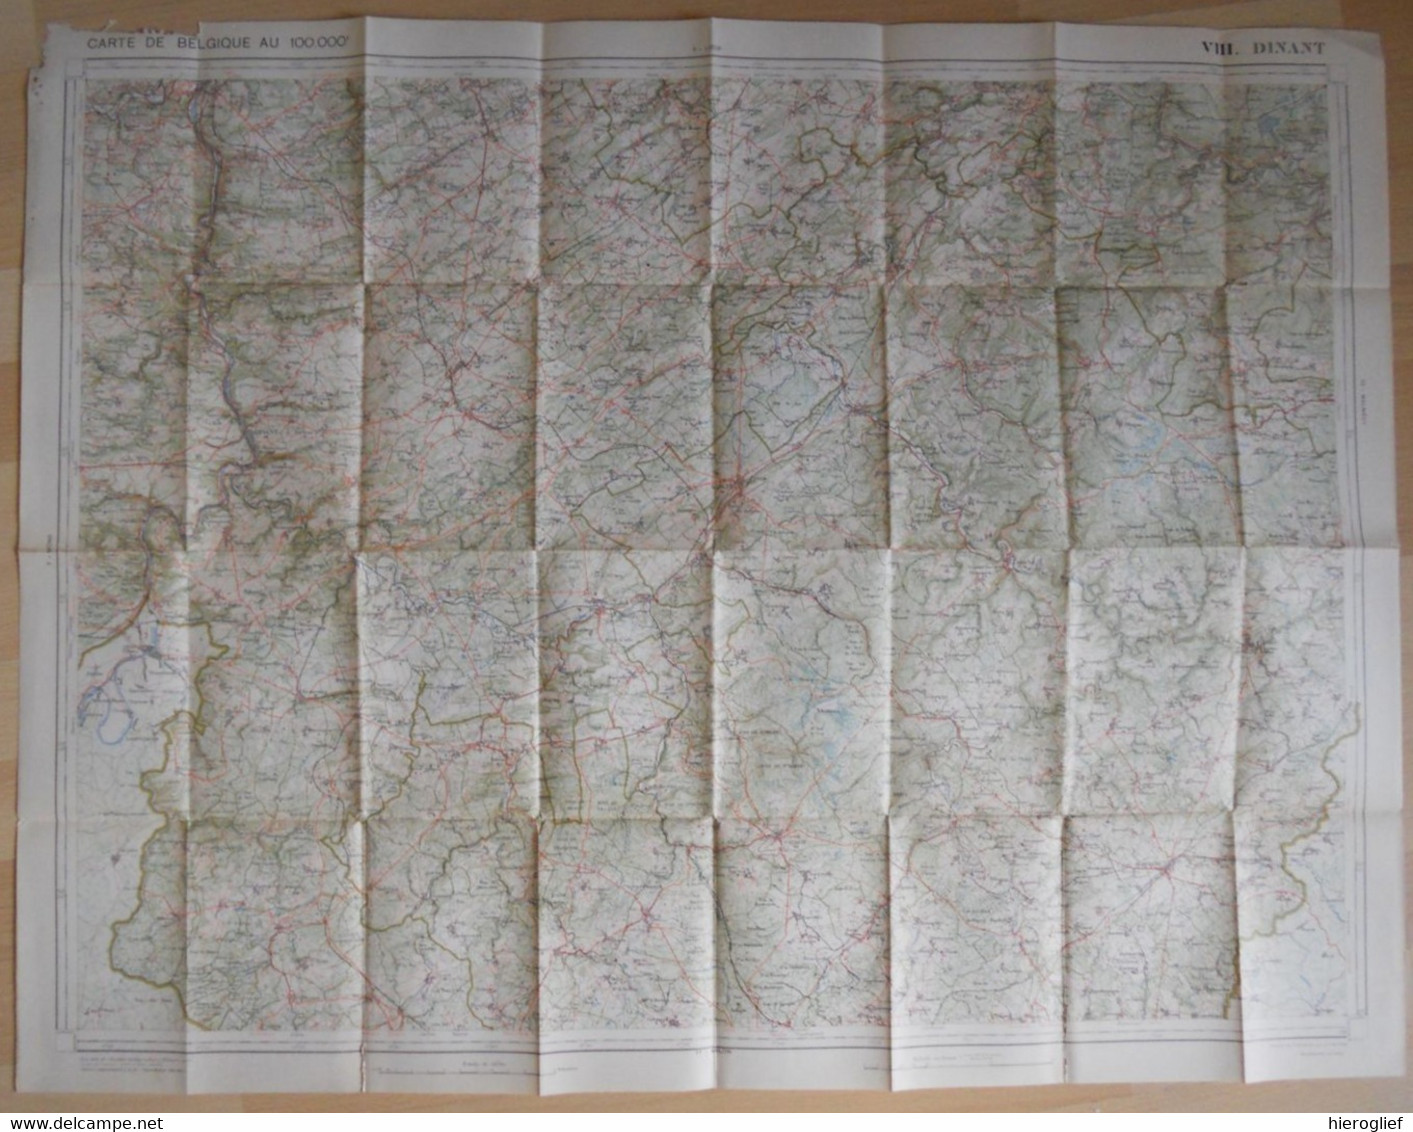 Carte De BELGIQUE Nr 8 DINANT Institut Cartographique Militaire Impression Litho 1933 Bastogne Houfalize La Roche Nadrin - Topographische Karten